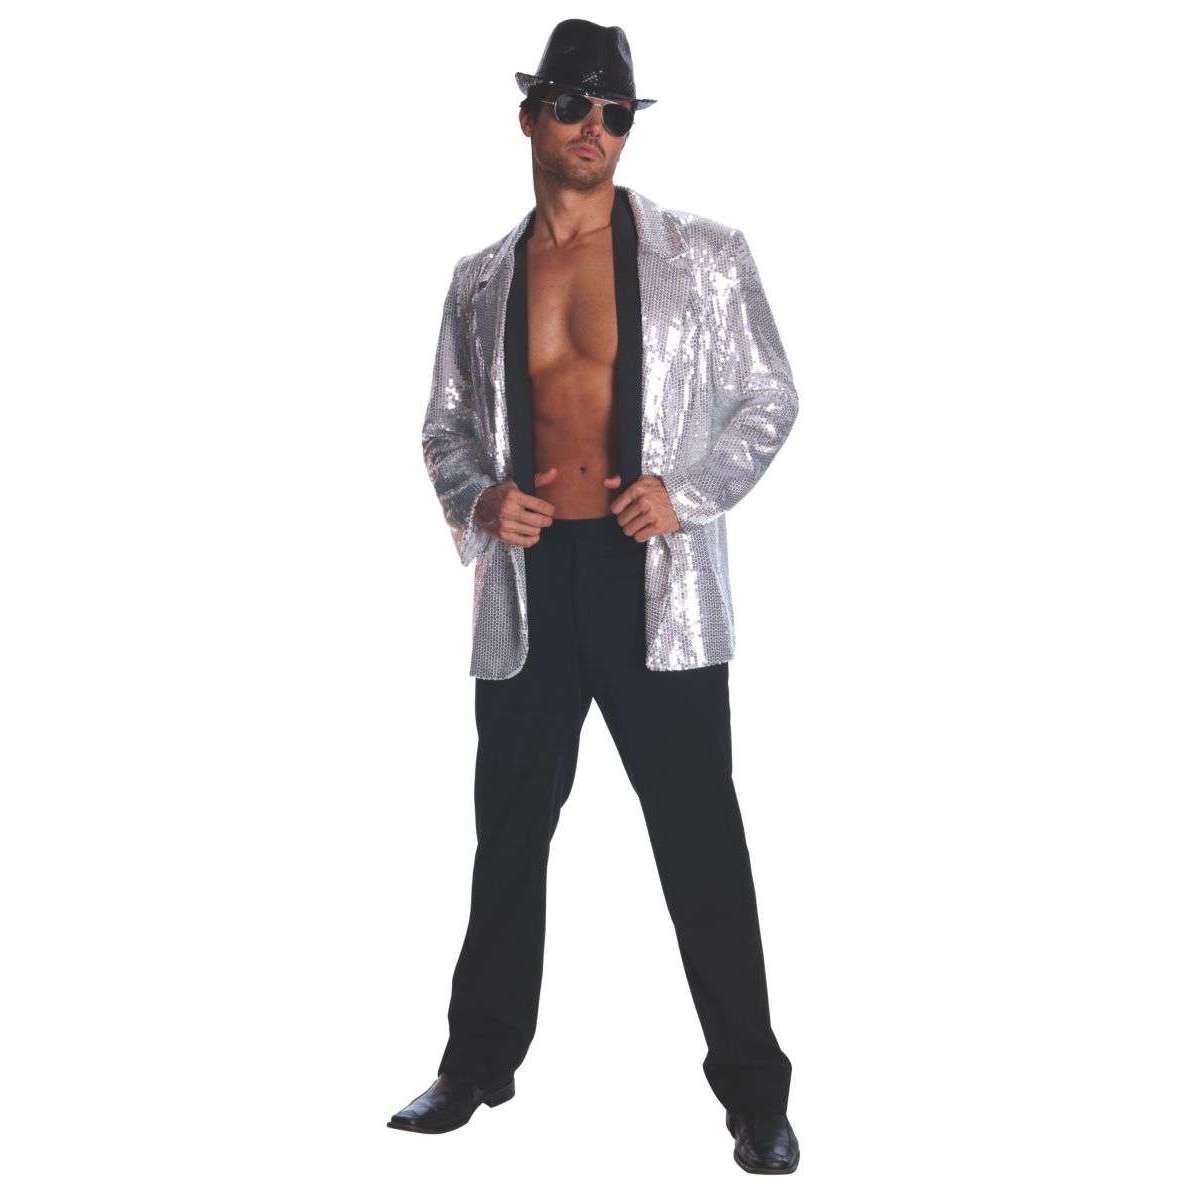 Silver Sequin Jacket Men's Adult Costume